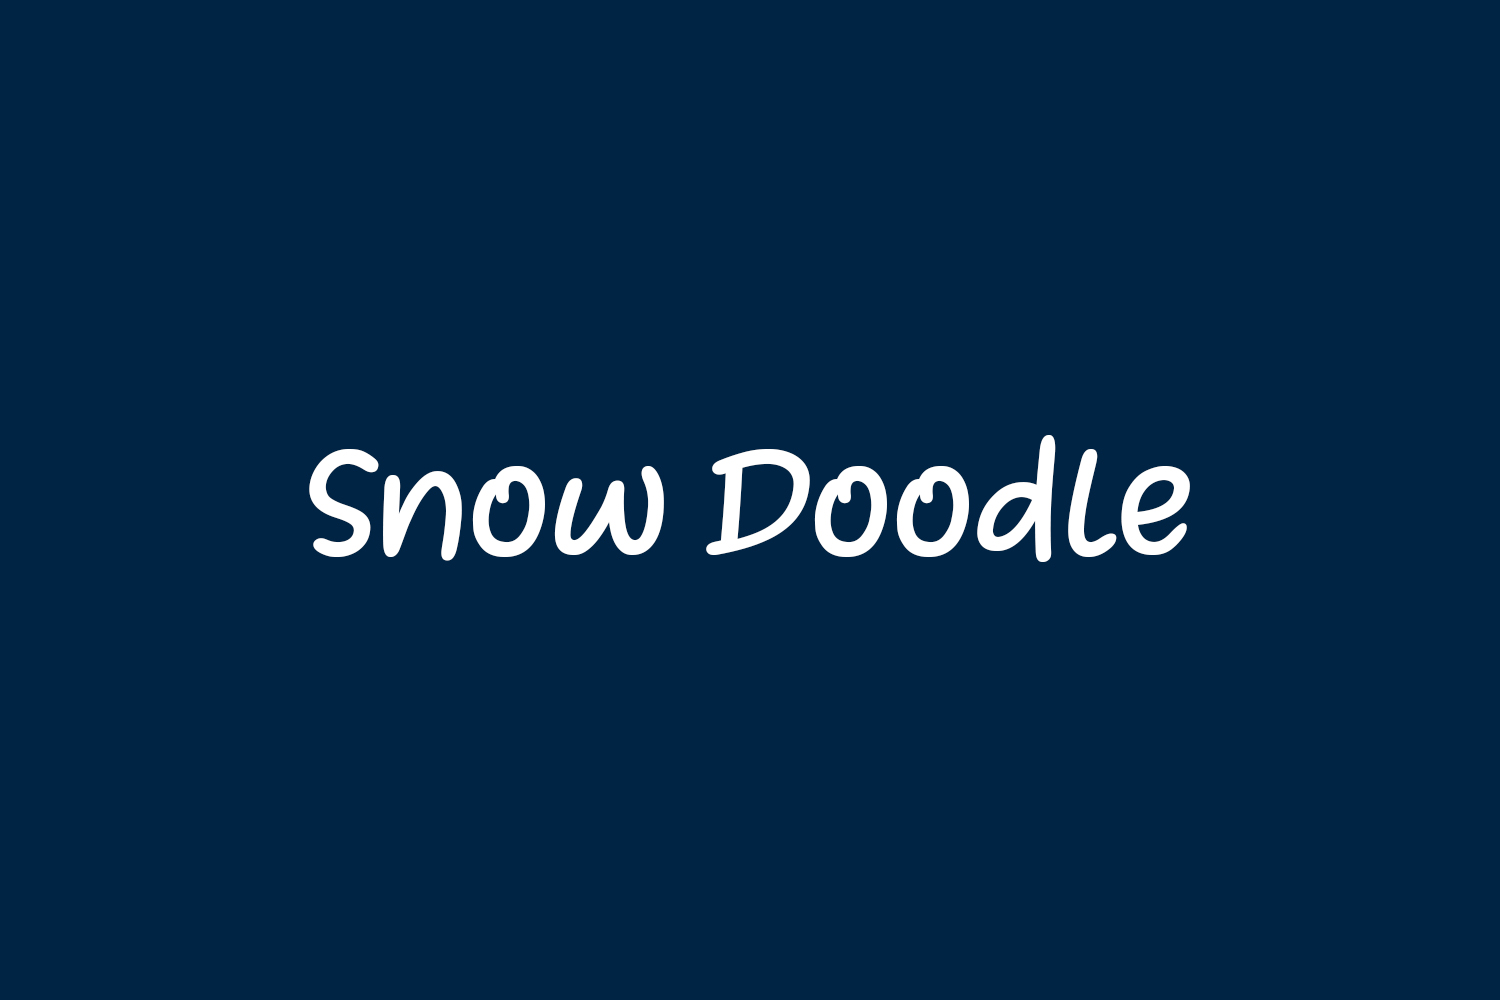 Snow Doodle Free Font